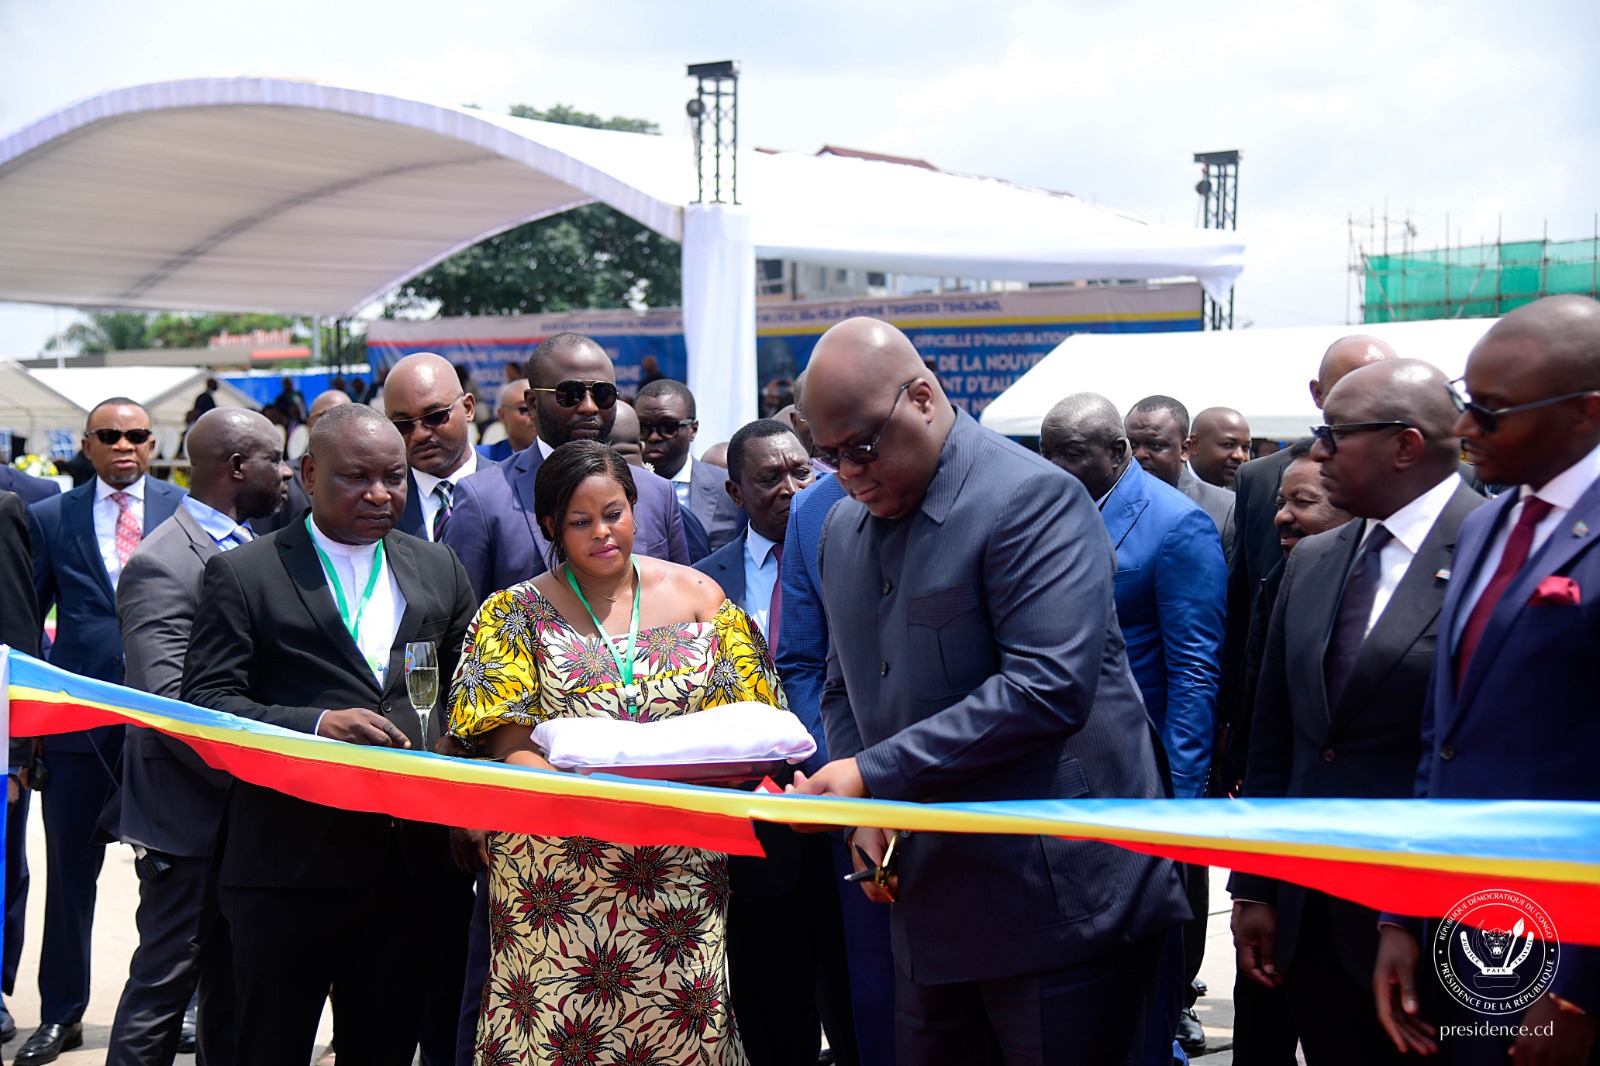 RDC-Société:Le President de la république a inauguré  un nouveau complexe industriel de traitement d’eau potable